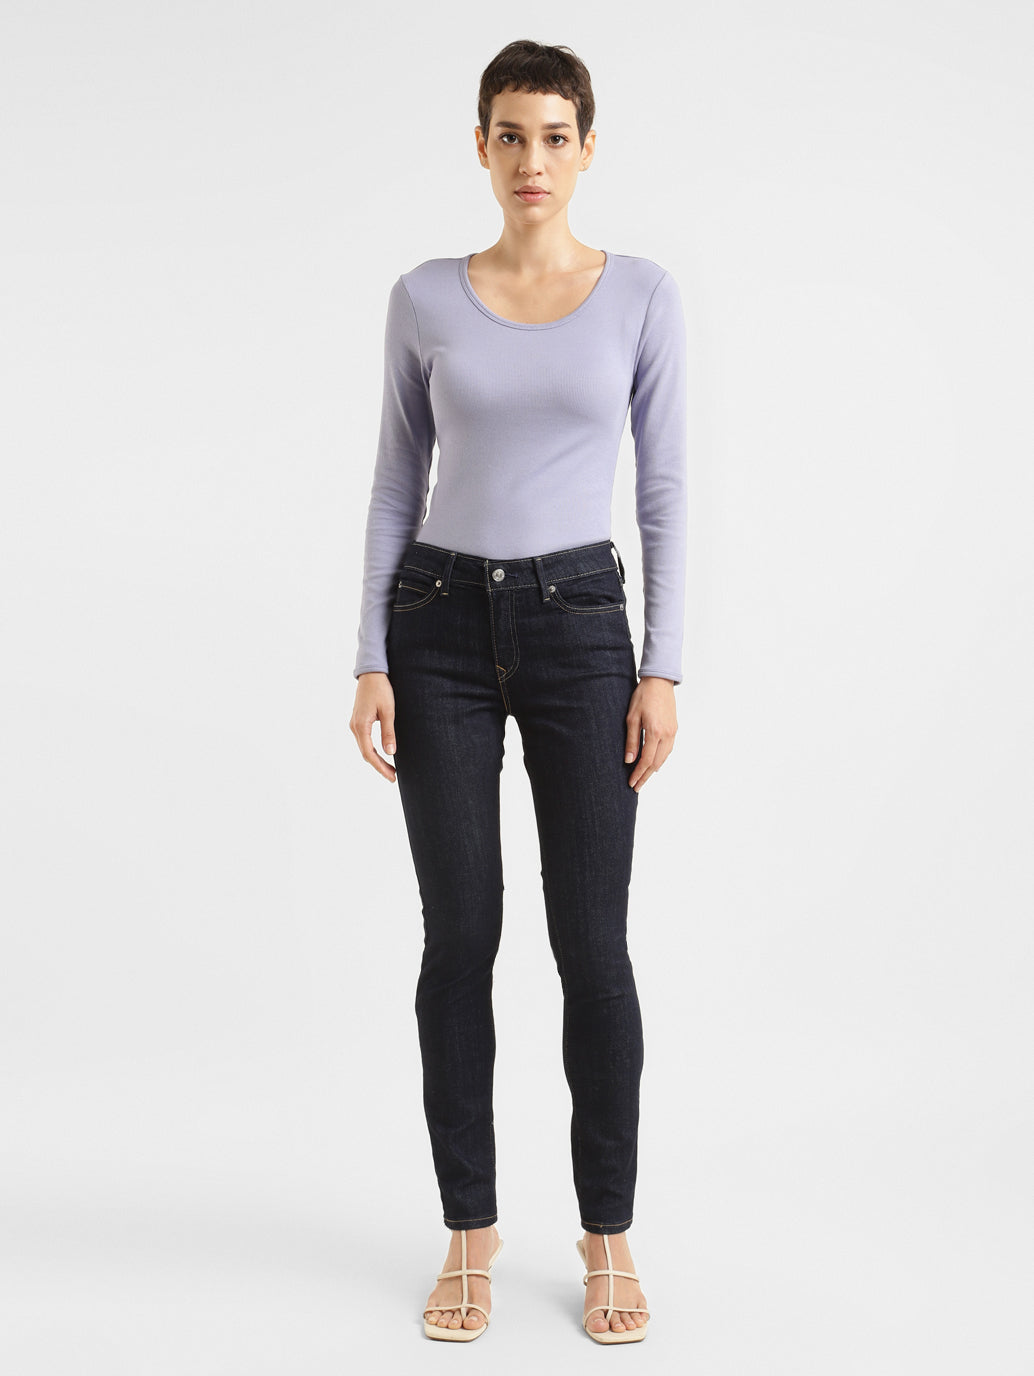 Women's 711 Skinny Fit Jeans